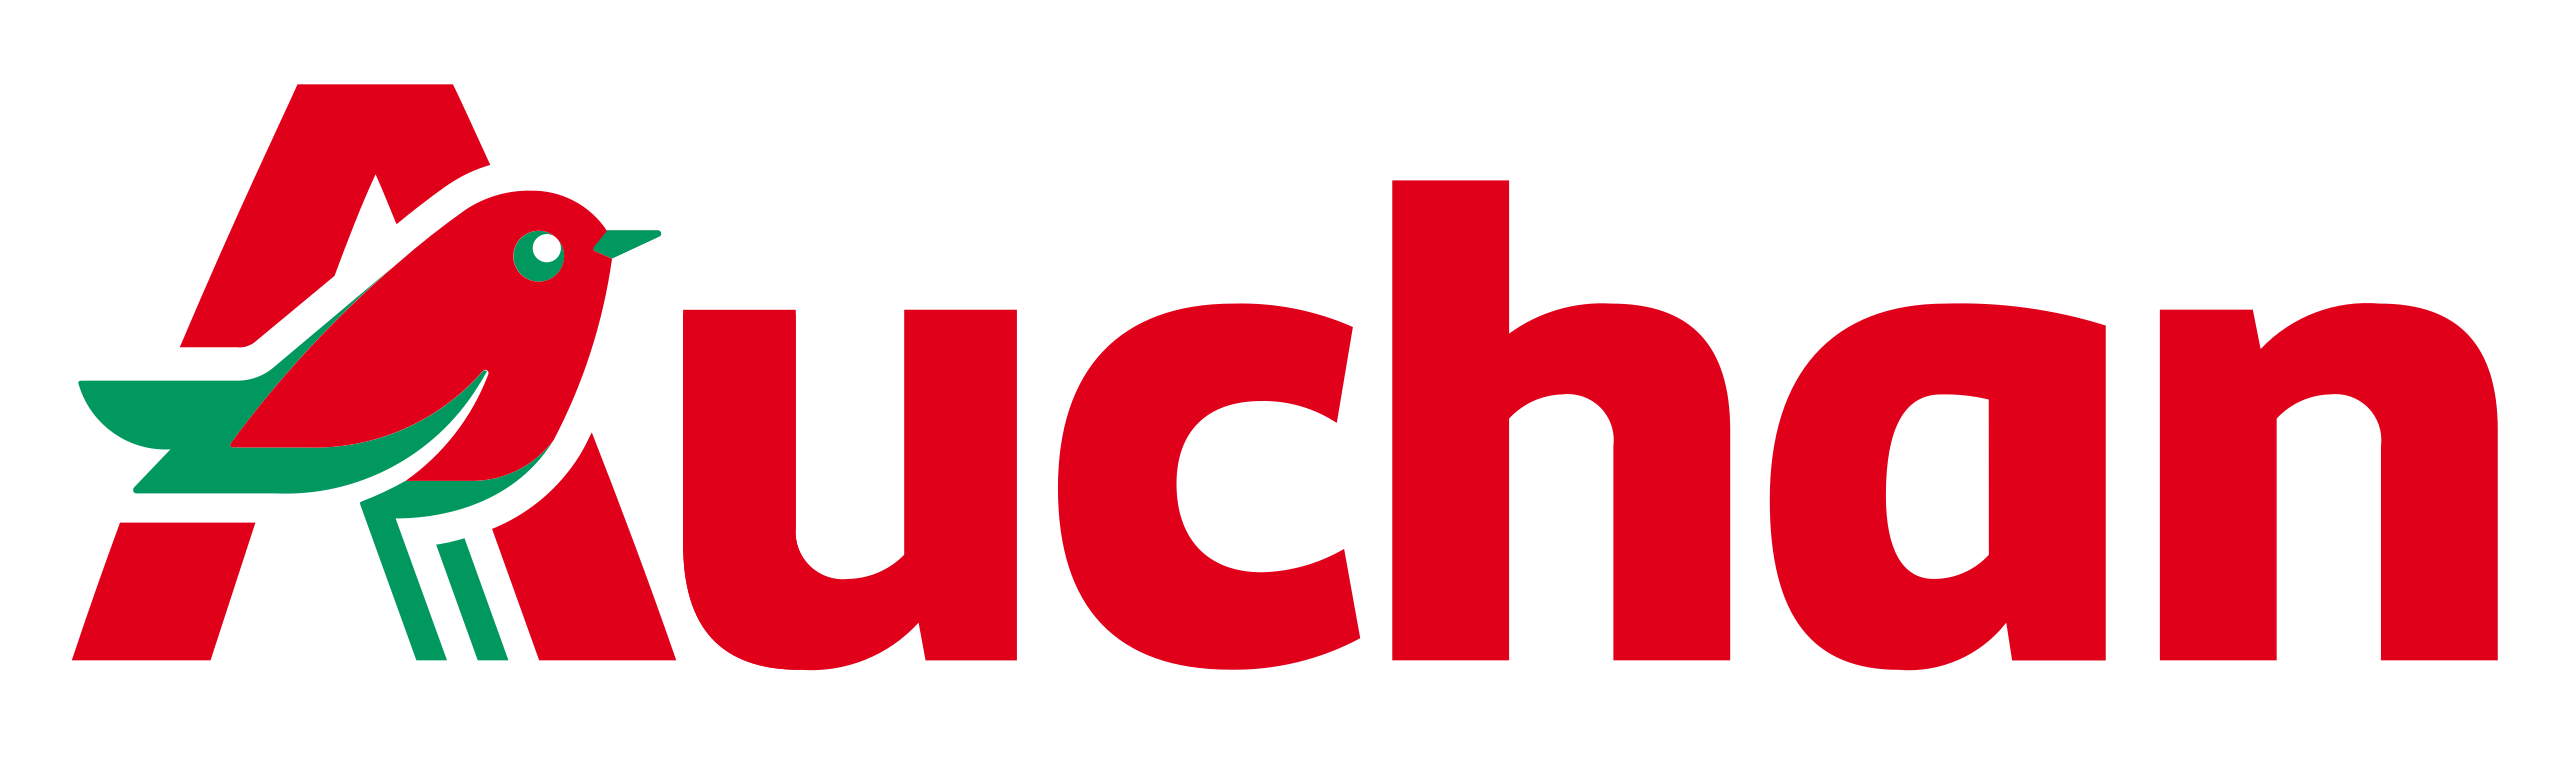 Auchan original logo